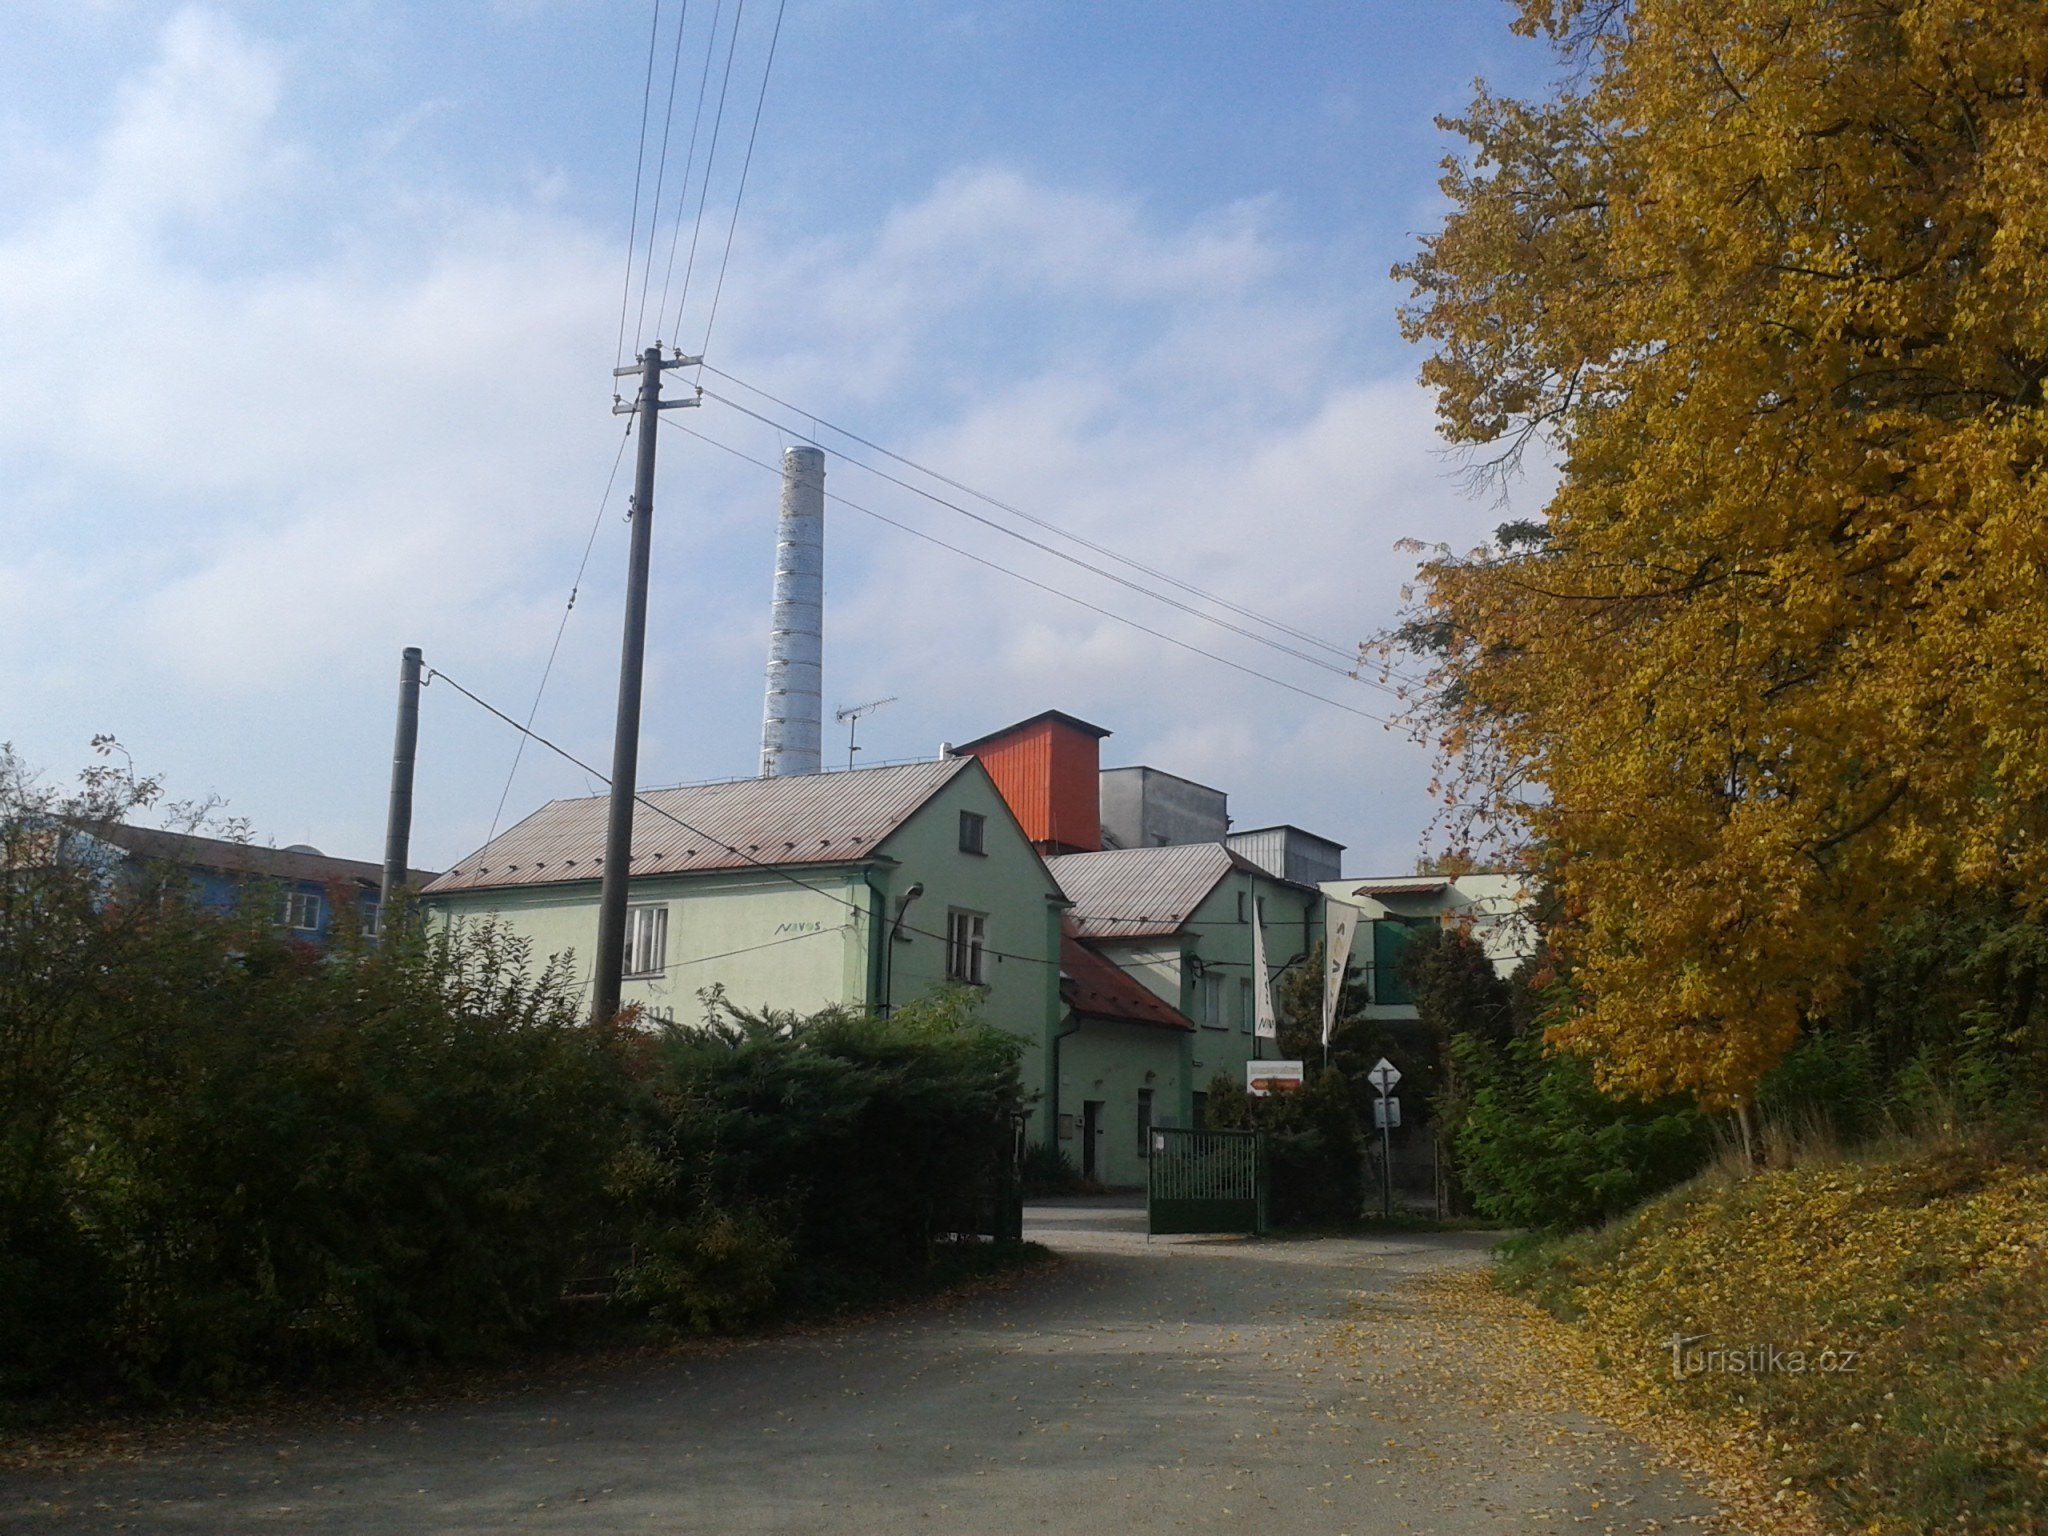 nhà máy chưng cất ở Zábřeh - chúng tôi không đi qua nó, có một con đường hẹp